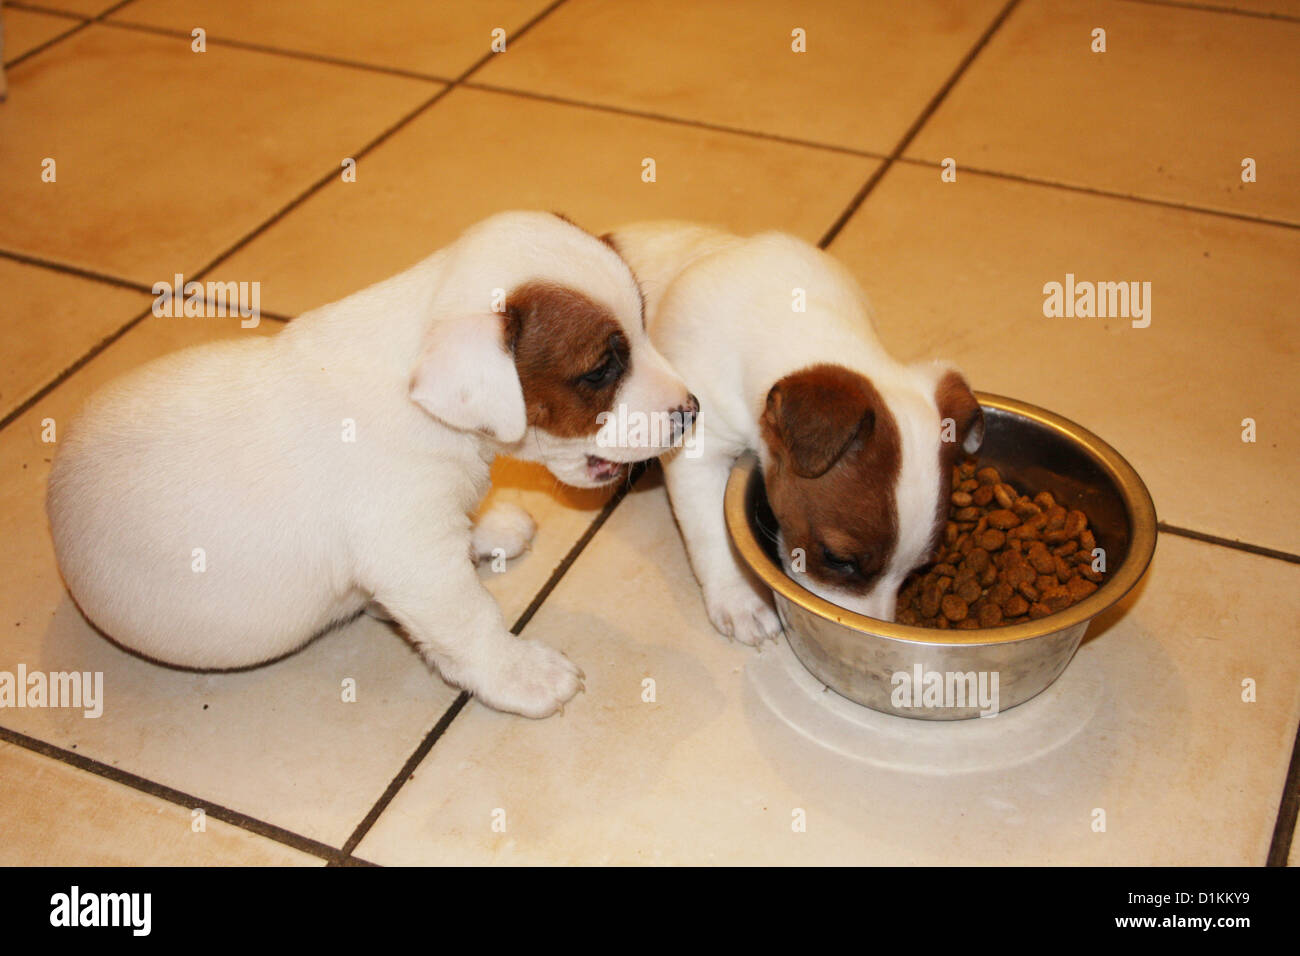 Cane Jack Russel cuccioli mangiare nel loro recipiente Foto Stock